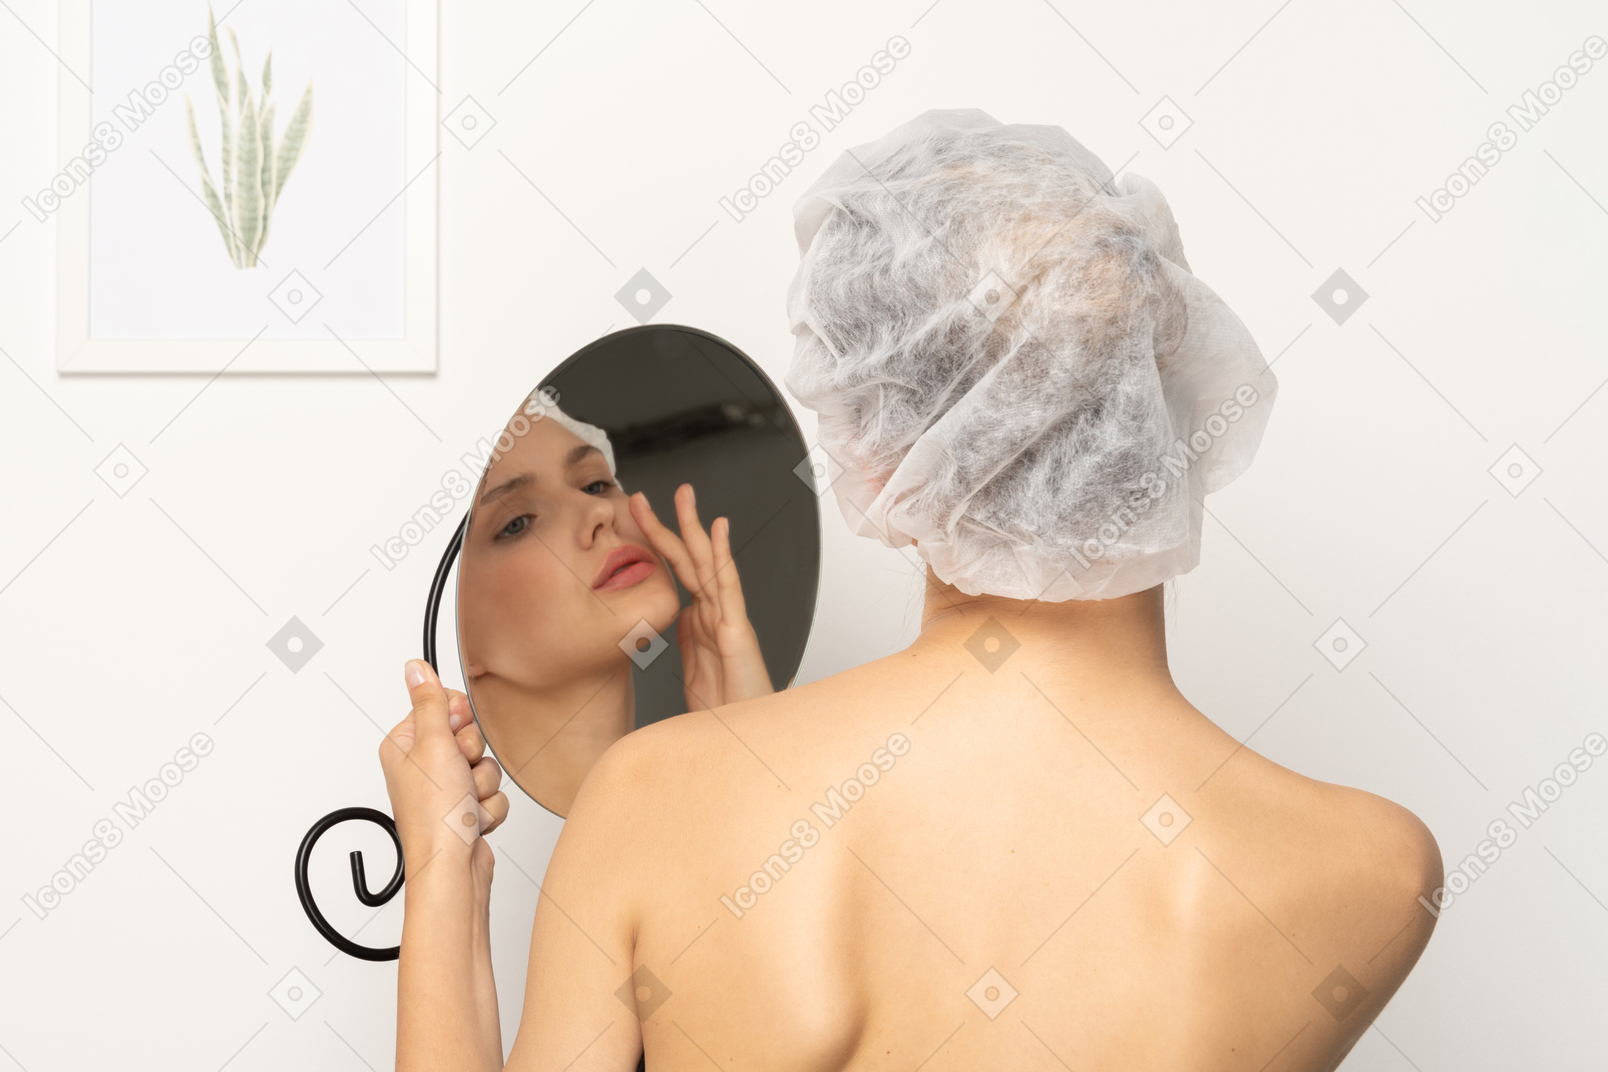 거울에 비친 자신의 모습을 바라보는 수술 모자를 쓴 여성